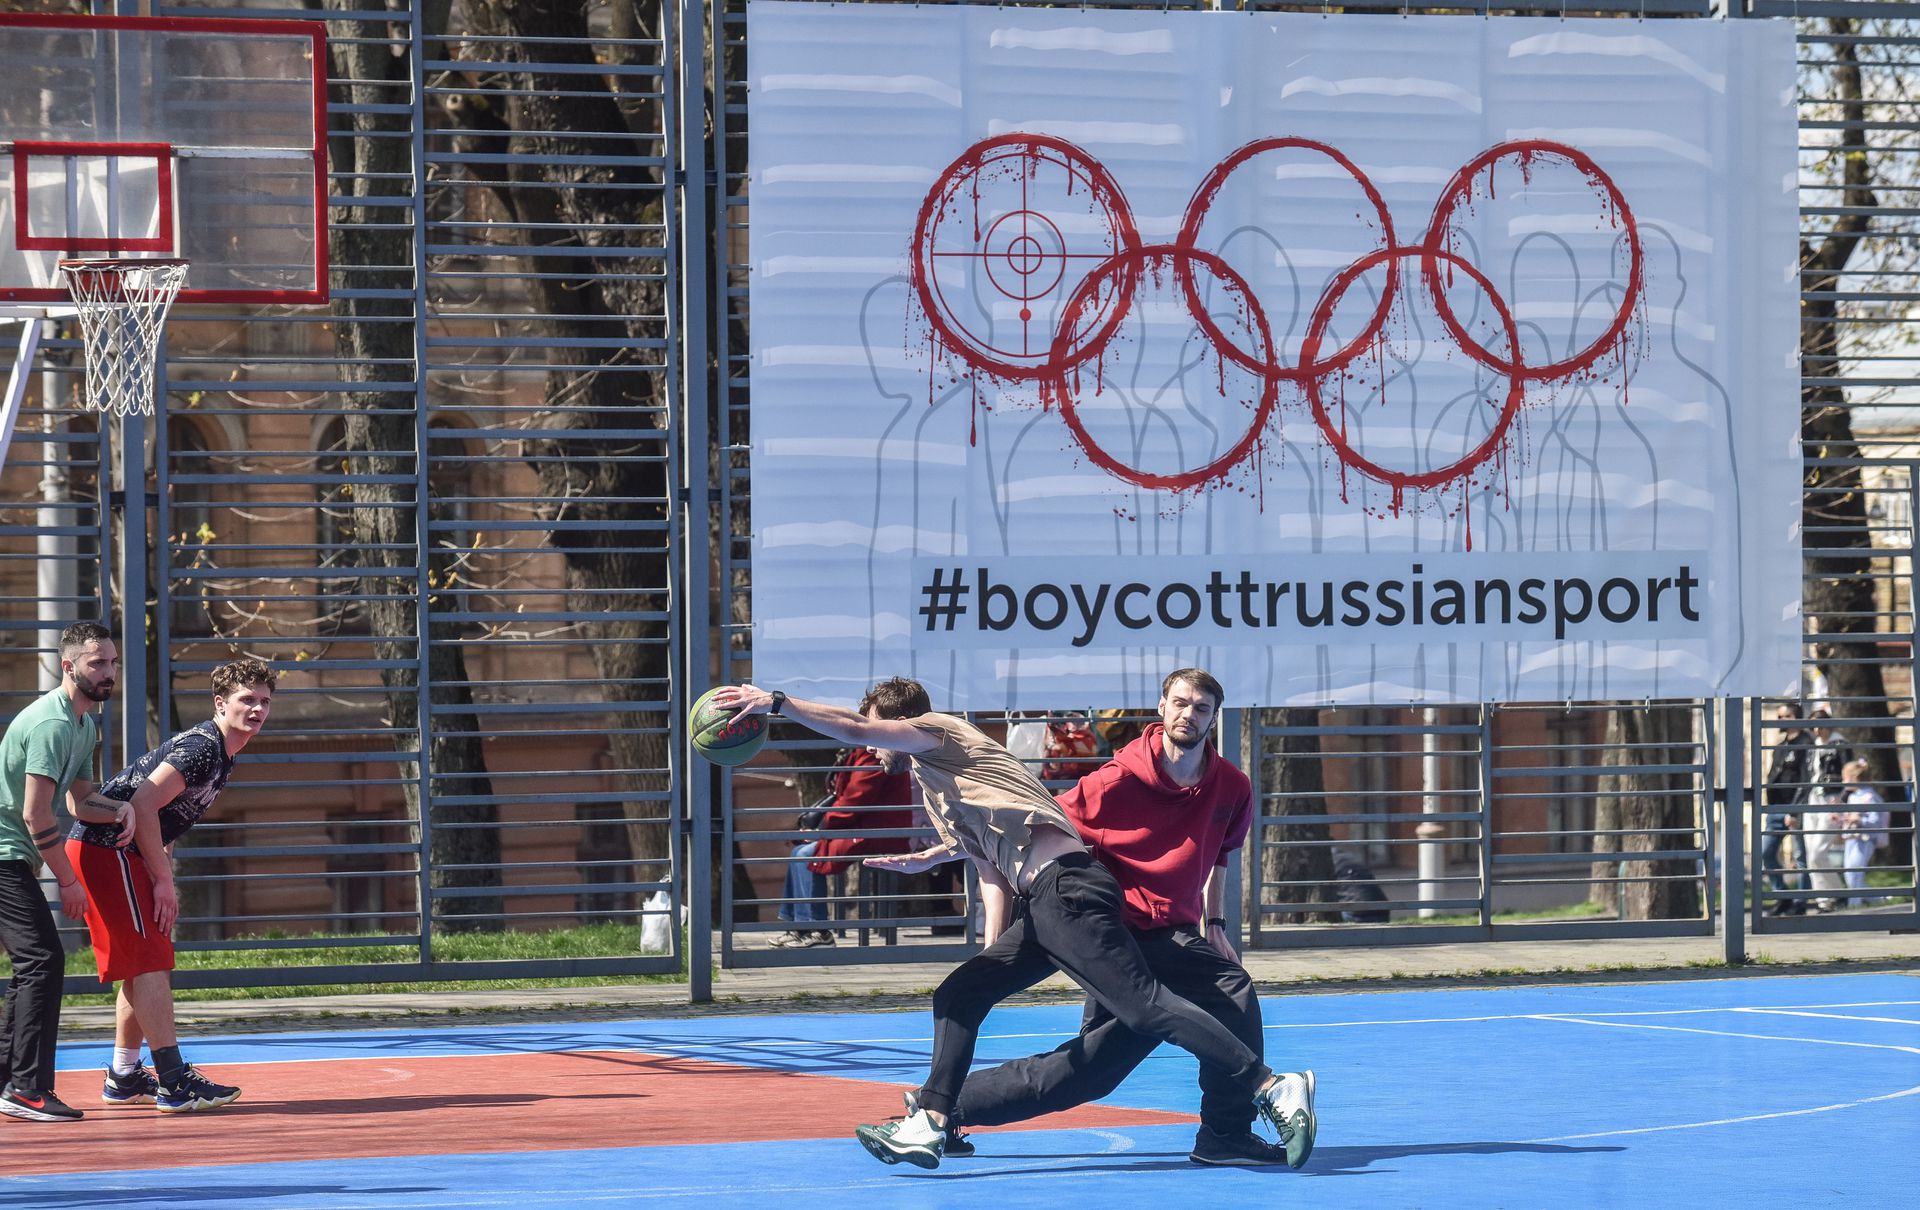 Az ukrajnai Lvivben egy játszótéri sportpályán is az orosz sportolók elleni bojkottra szólítanak fel (Fotó: Getty Images)